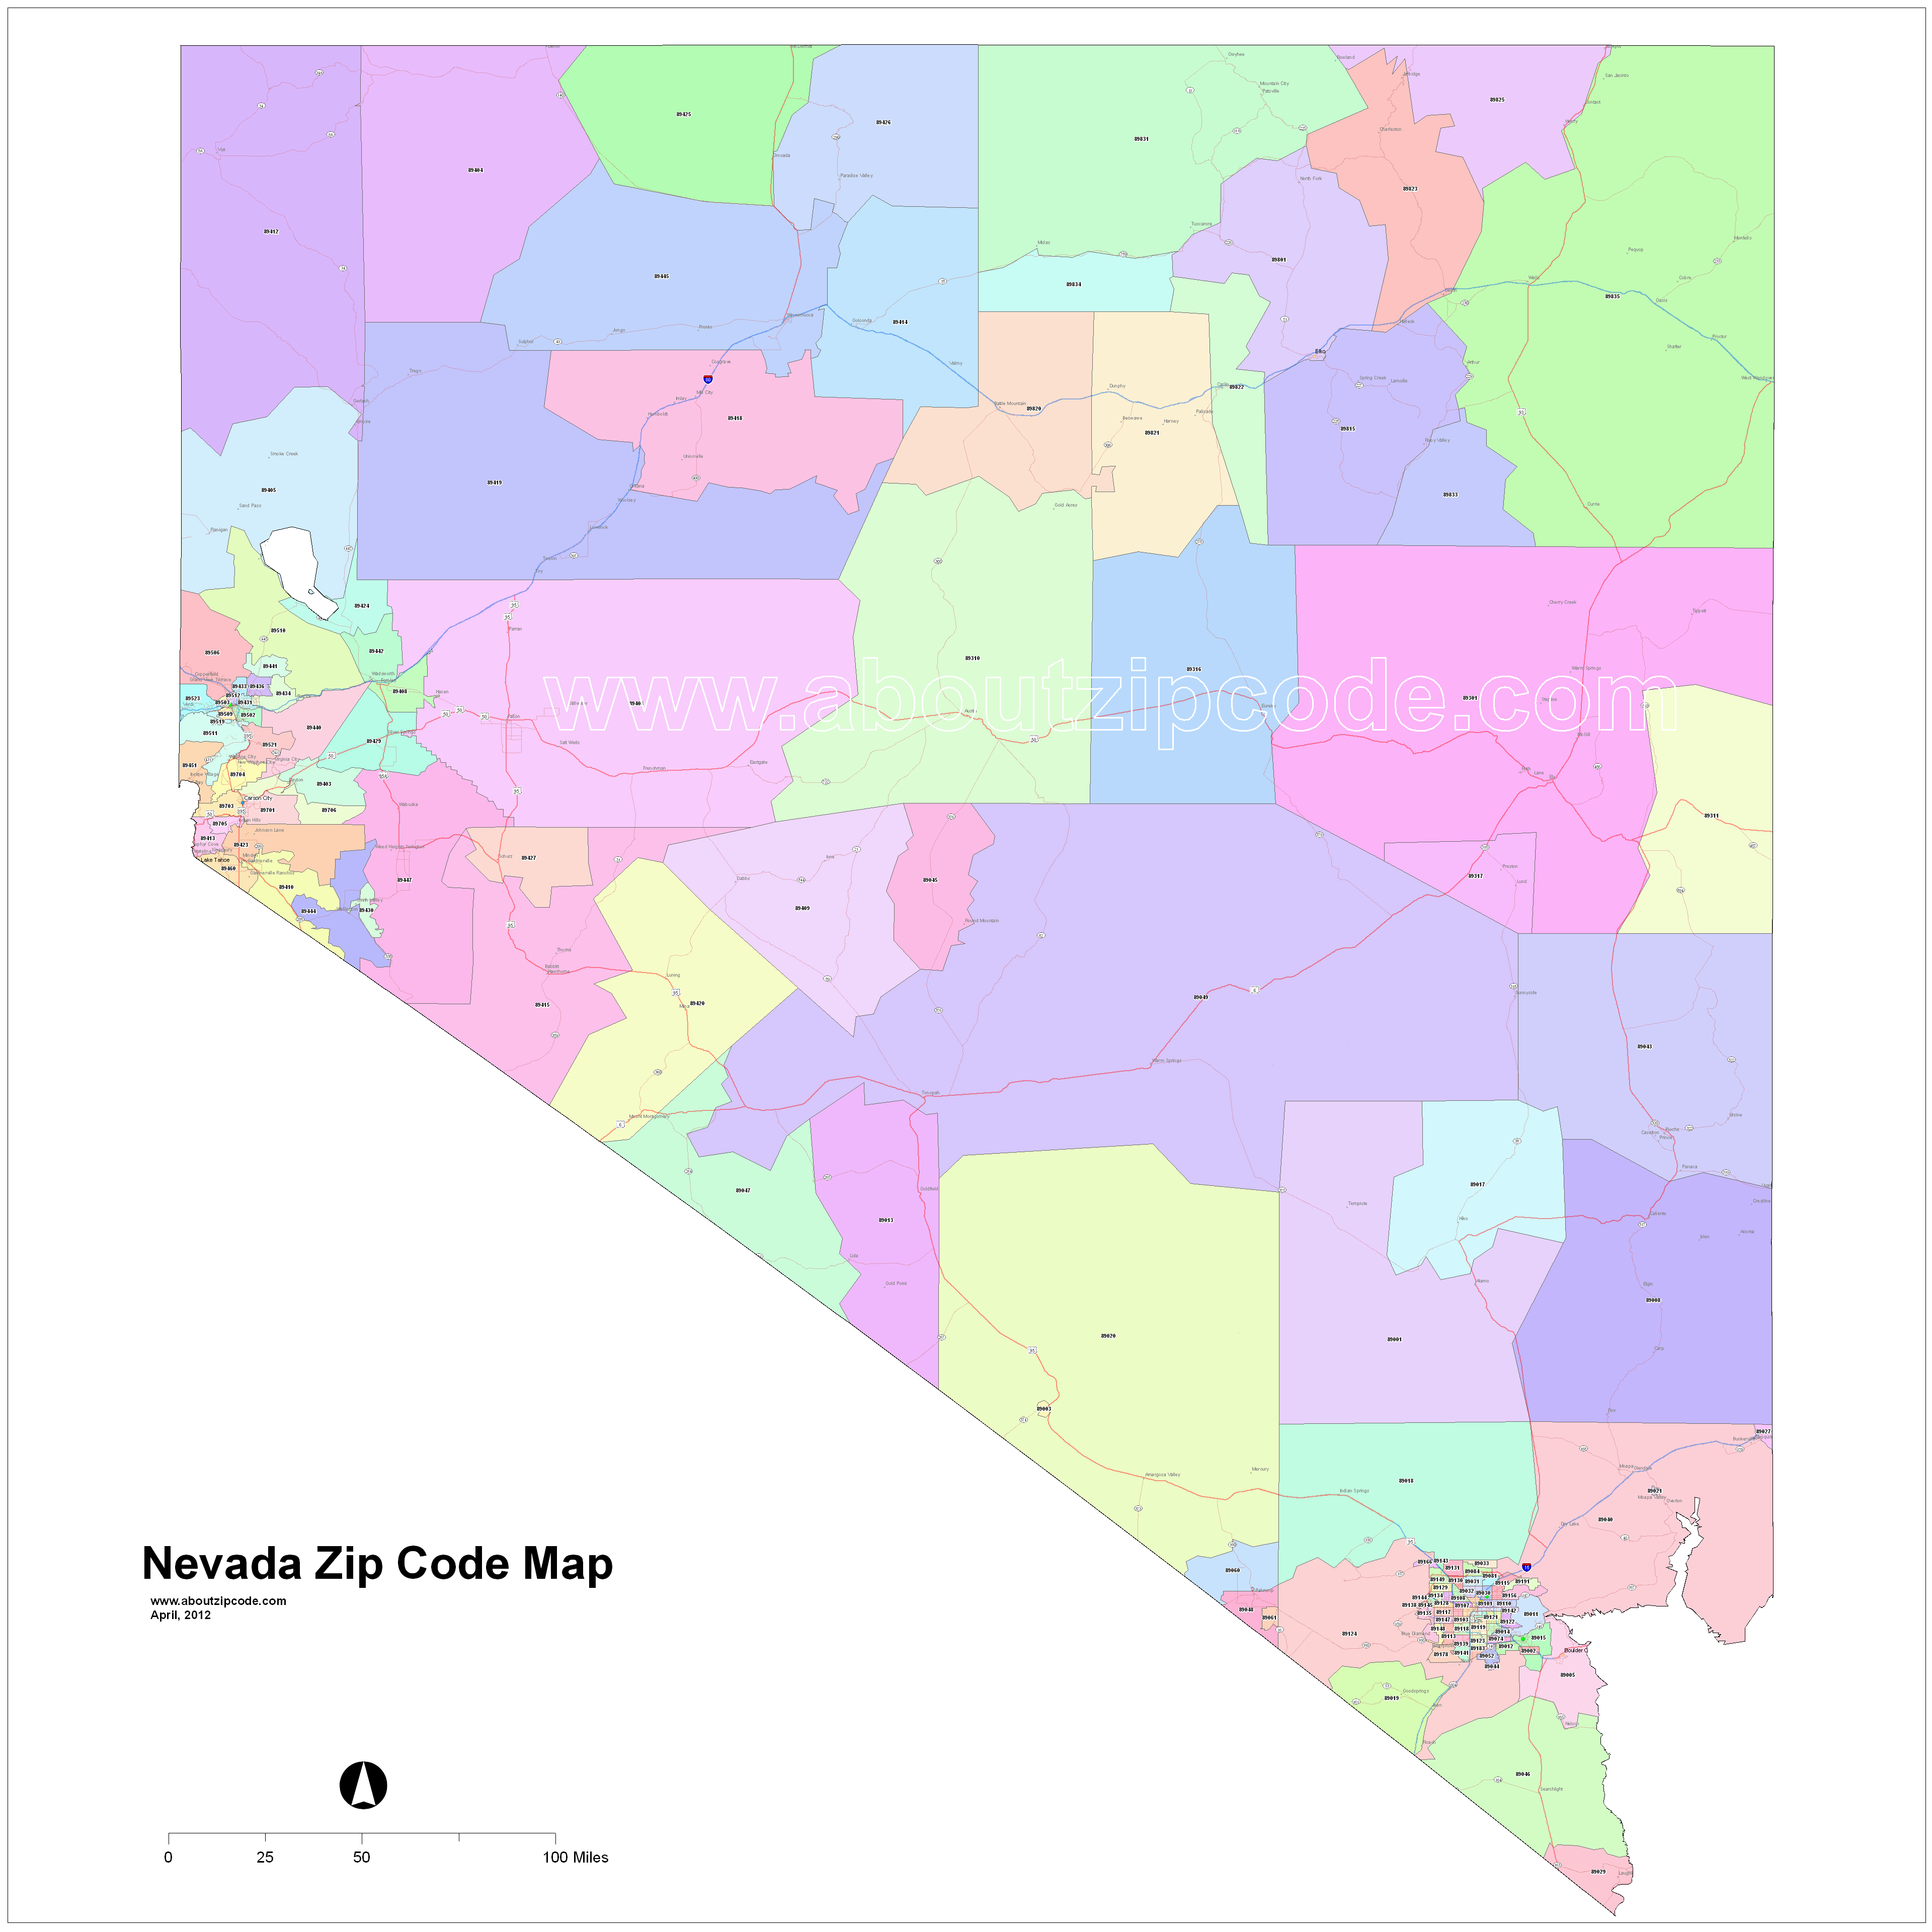 Nevada Zip Code Maps Free Nevada Zip Code Maps 1482